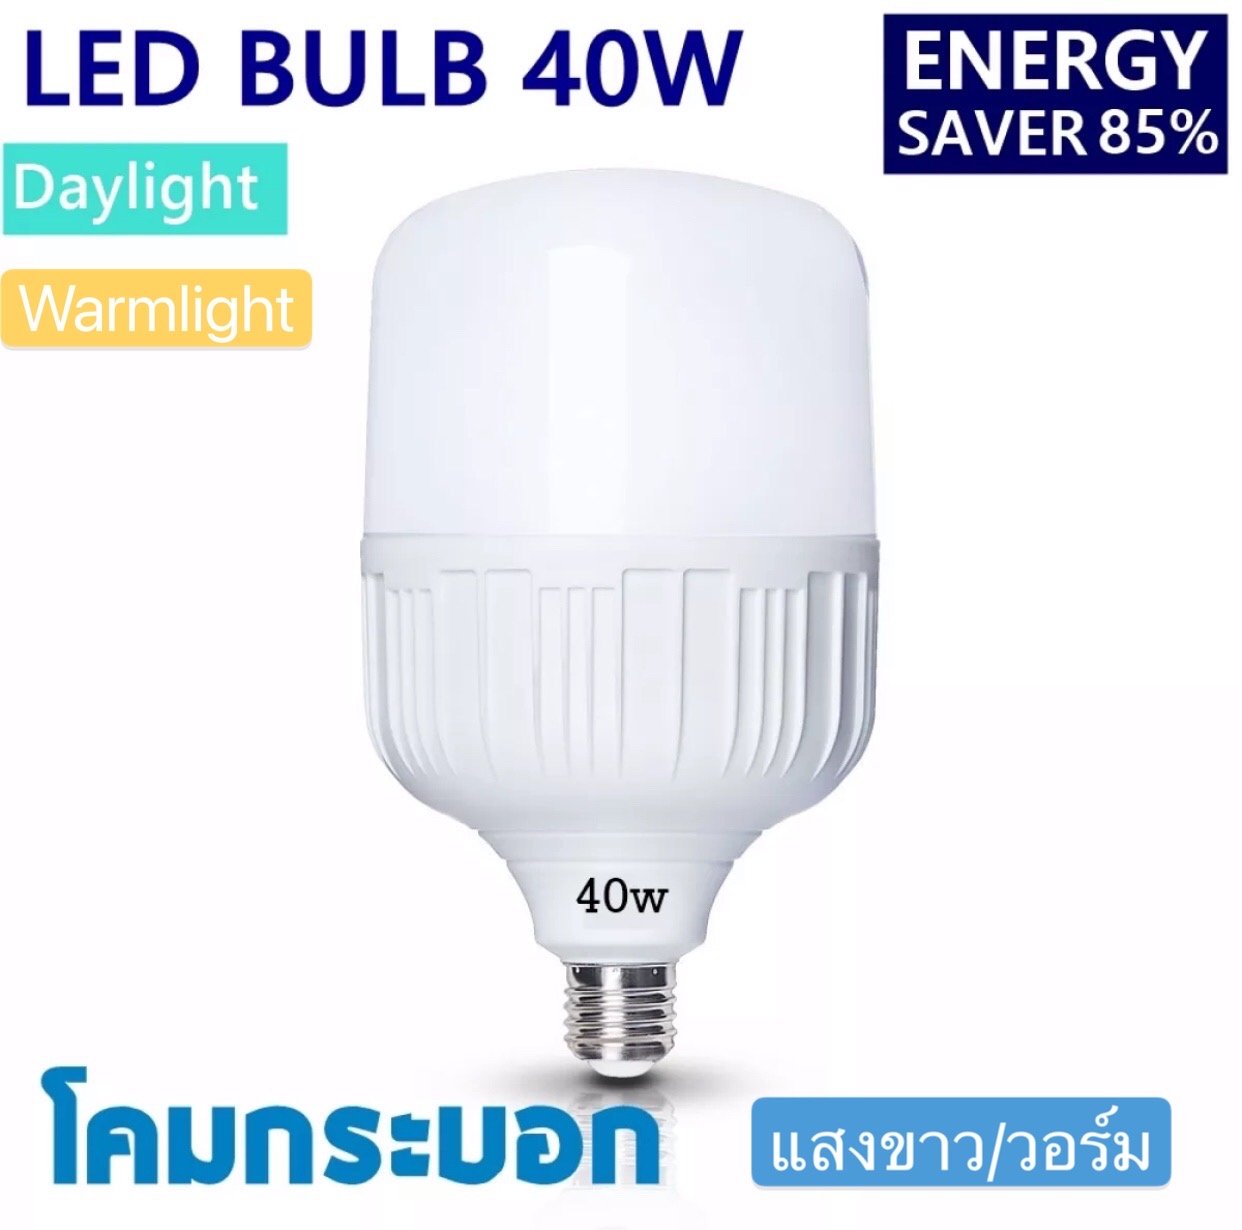 หลอด LED Bulb light หลอดไฟ LED 40 W แสง/สี ขาว  แสง/สี วอร์ม Daylight/Warmlight รับประกัน 1 ปี   ให้ความสว่างมากกว่า  ประหยัดพลังงาน